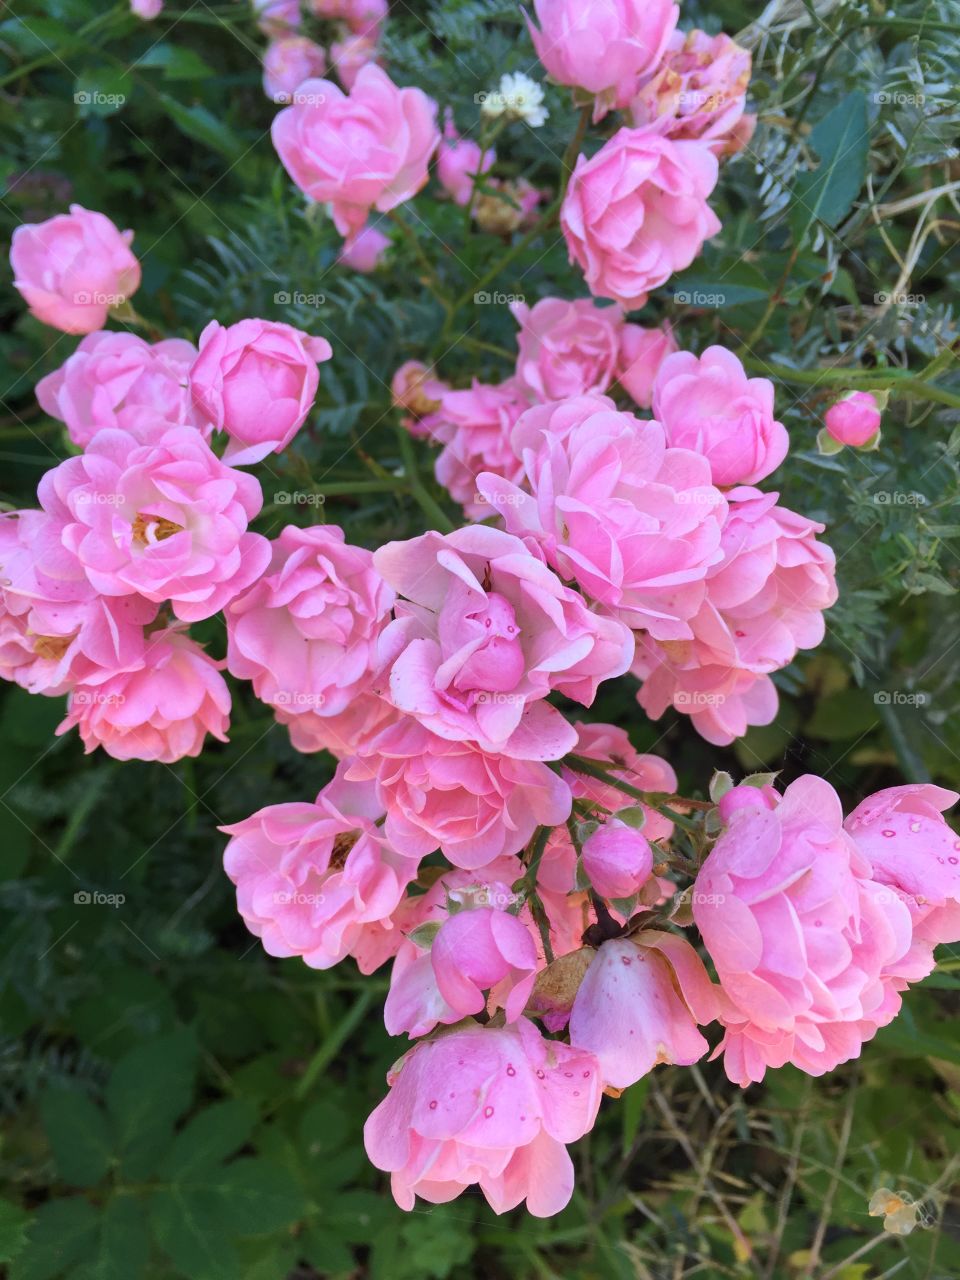 Roses in my garden 